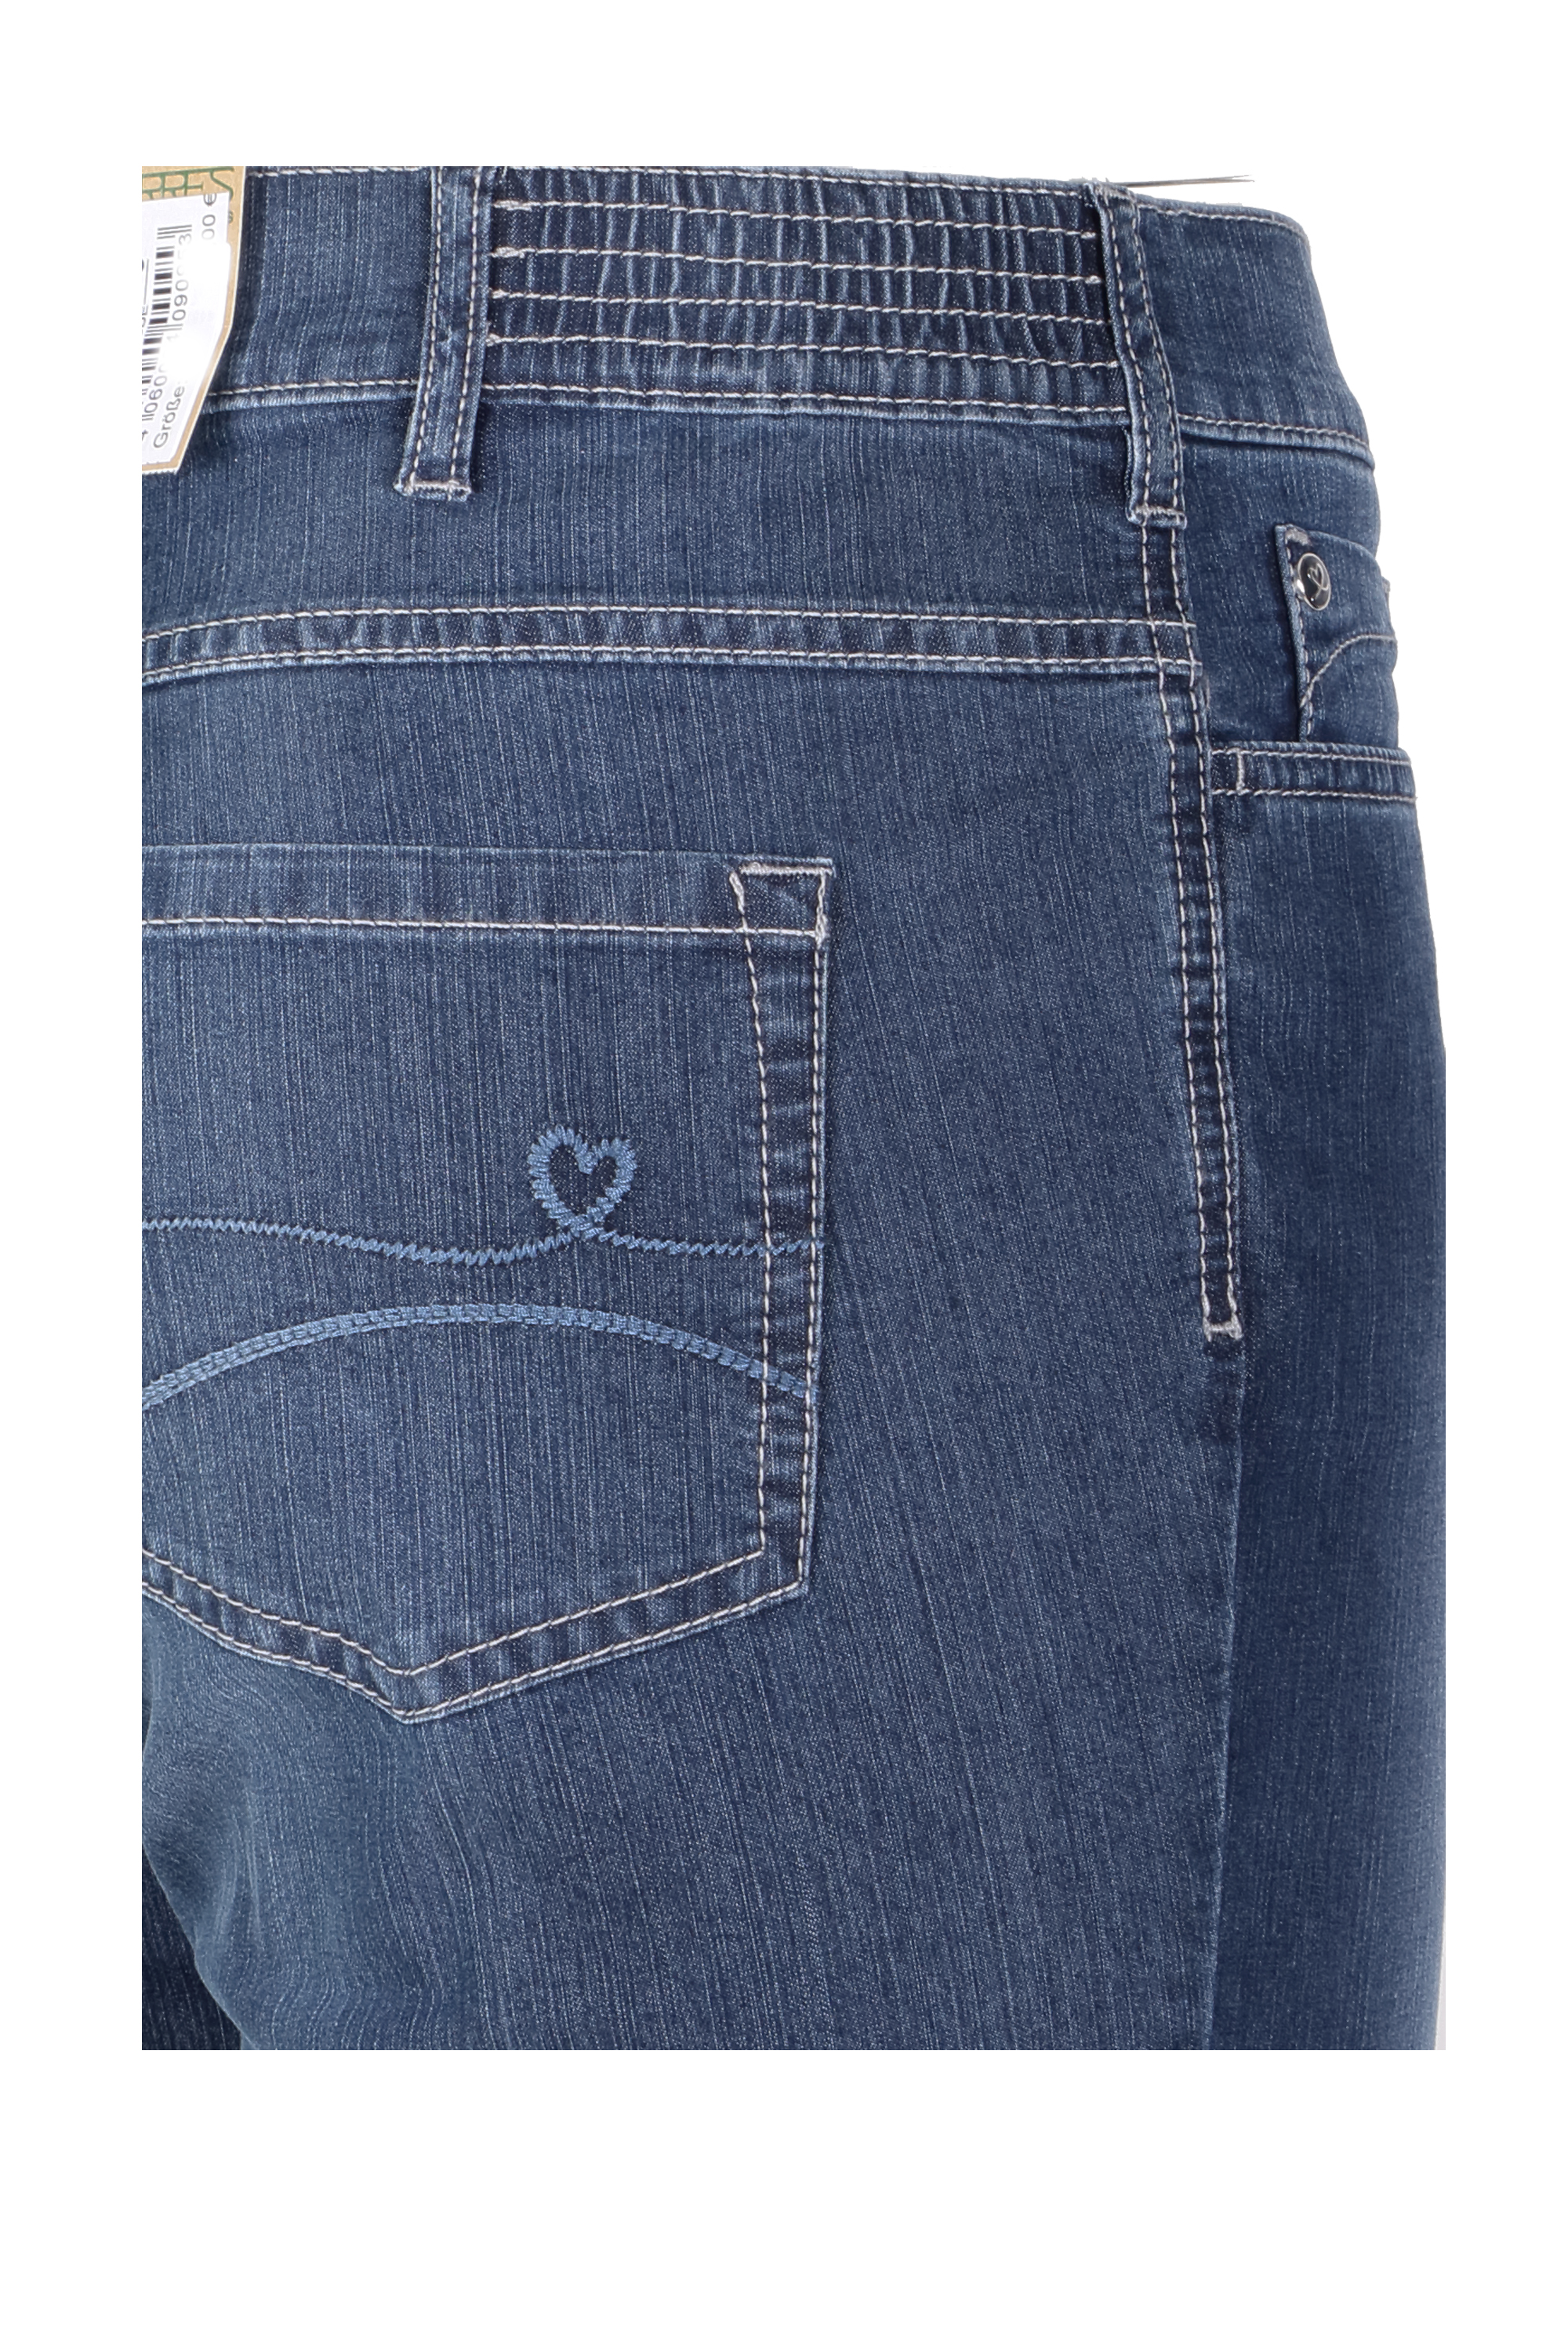 Zerres Damen Jeans Greta sommerliche Qualität - blau 44